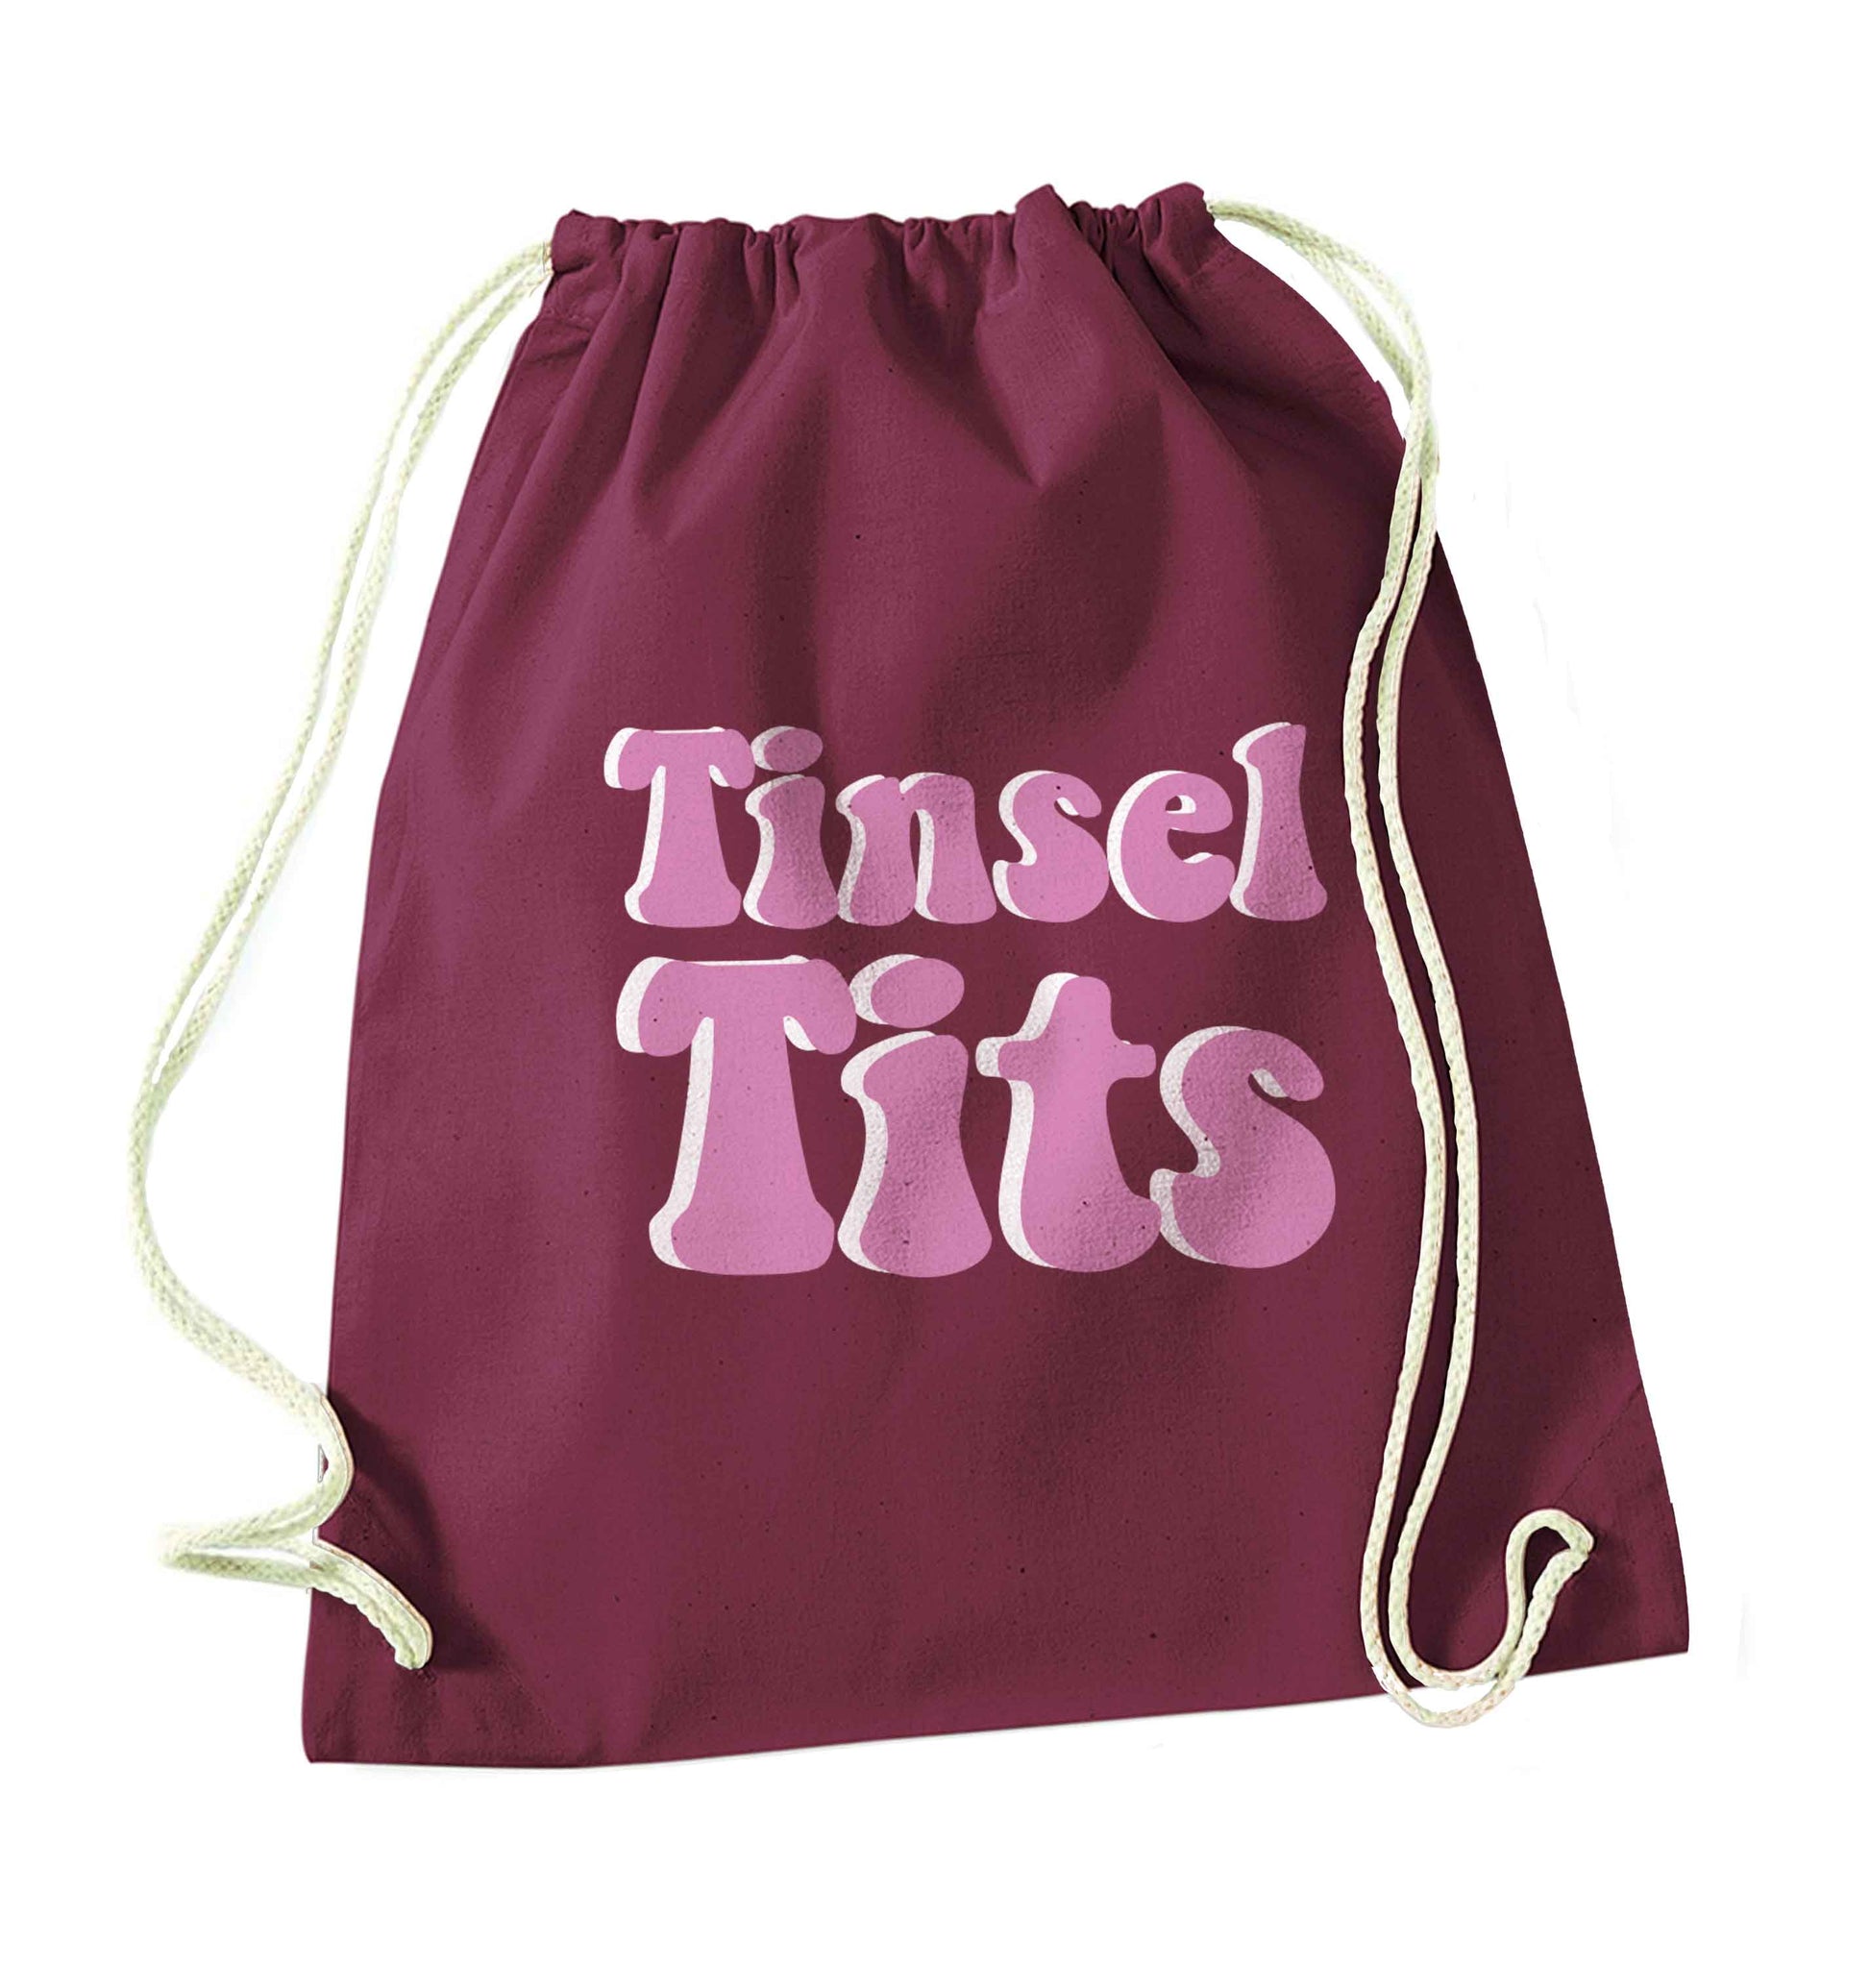 Tinsel tits maroon drawstring bag